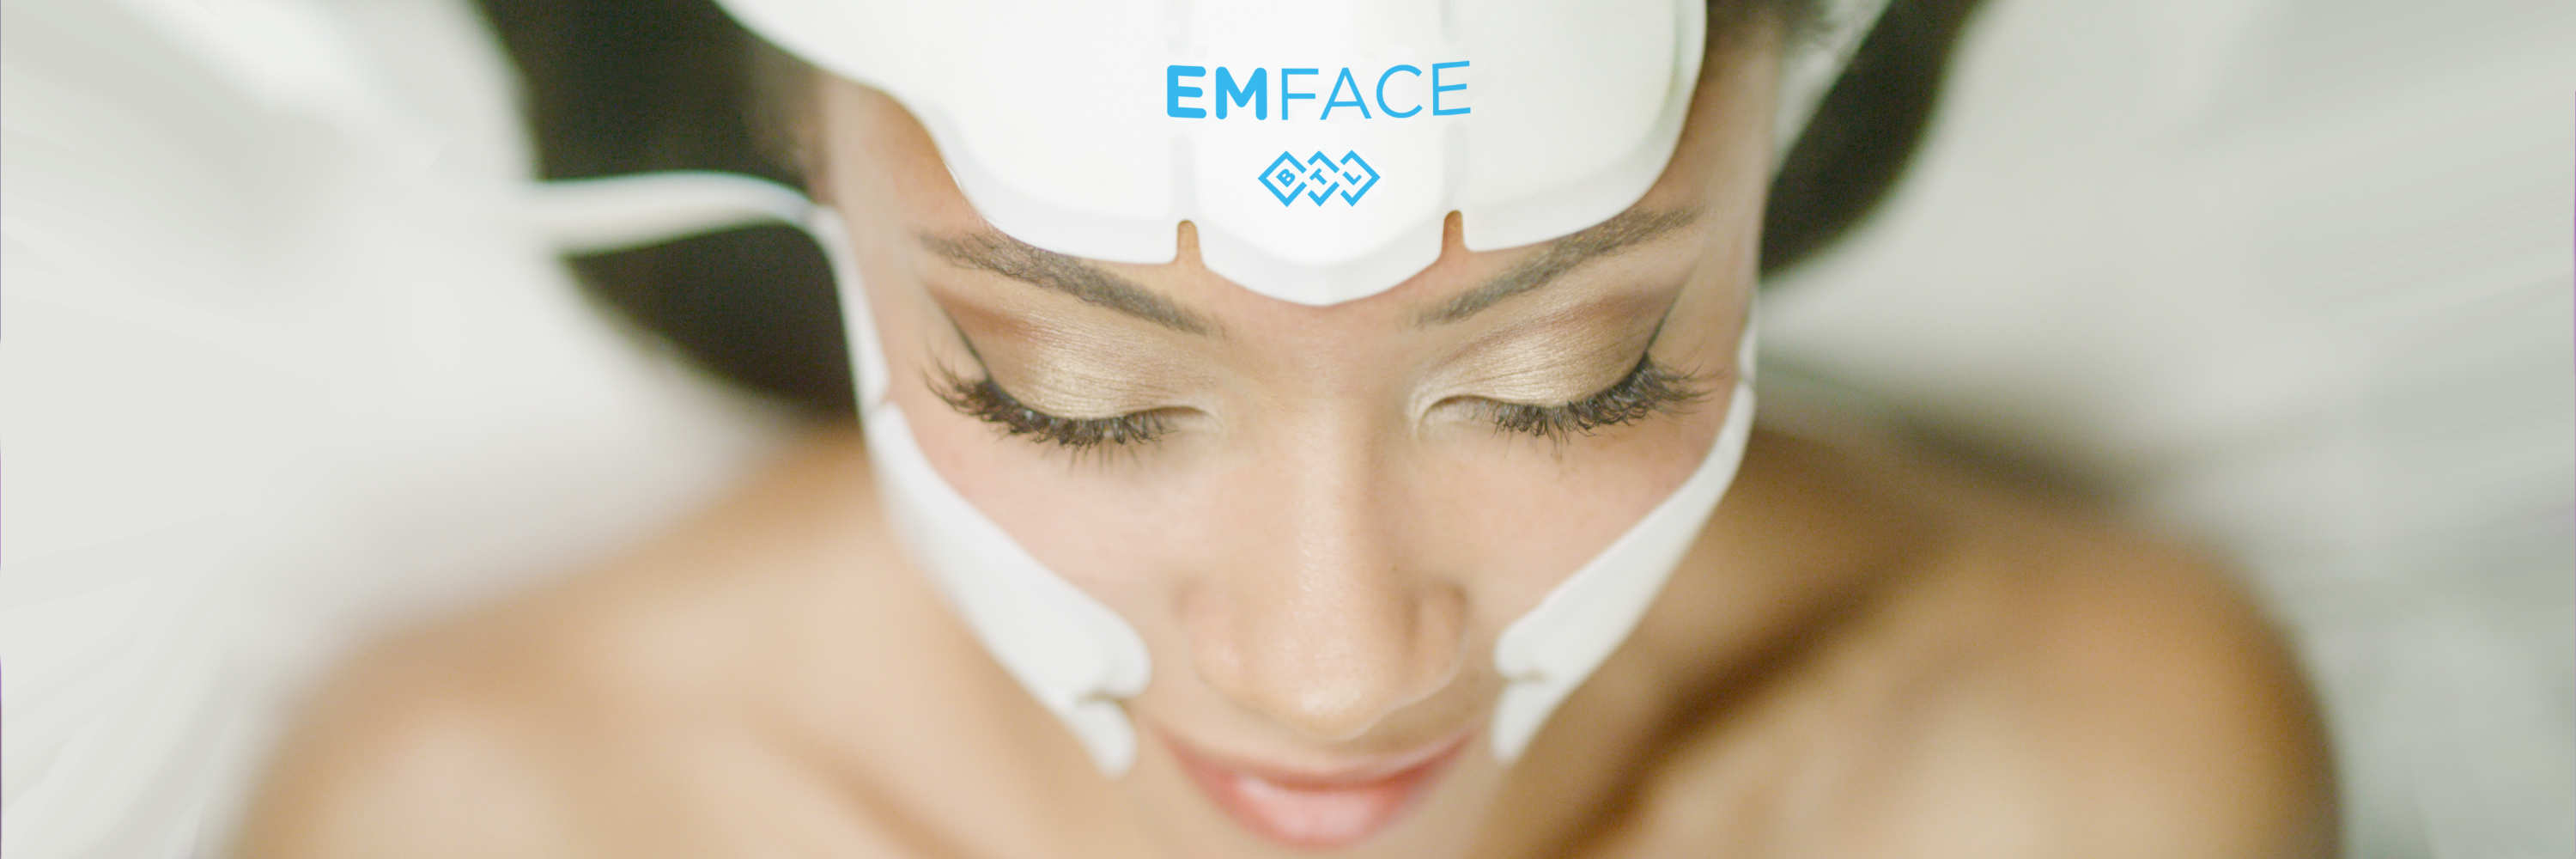 Eine Frau wünscht sich ein Gesicht ohne Falten und einen Lifting-Effekt. Die Abbildung zeigt die liegende Person während einer Faltenbehandlung mit an Stirn und Wangen angeklebten Applikatoren, mit der Aufschrift EMFACE. Sie hat jugendliche Ausstrahlung.